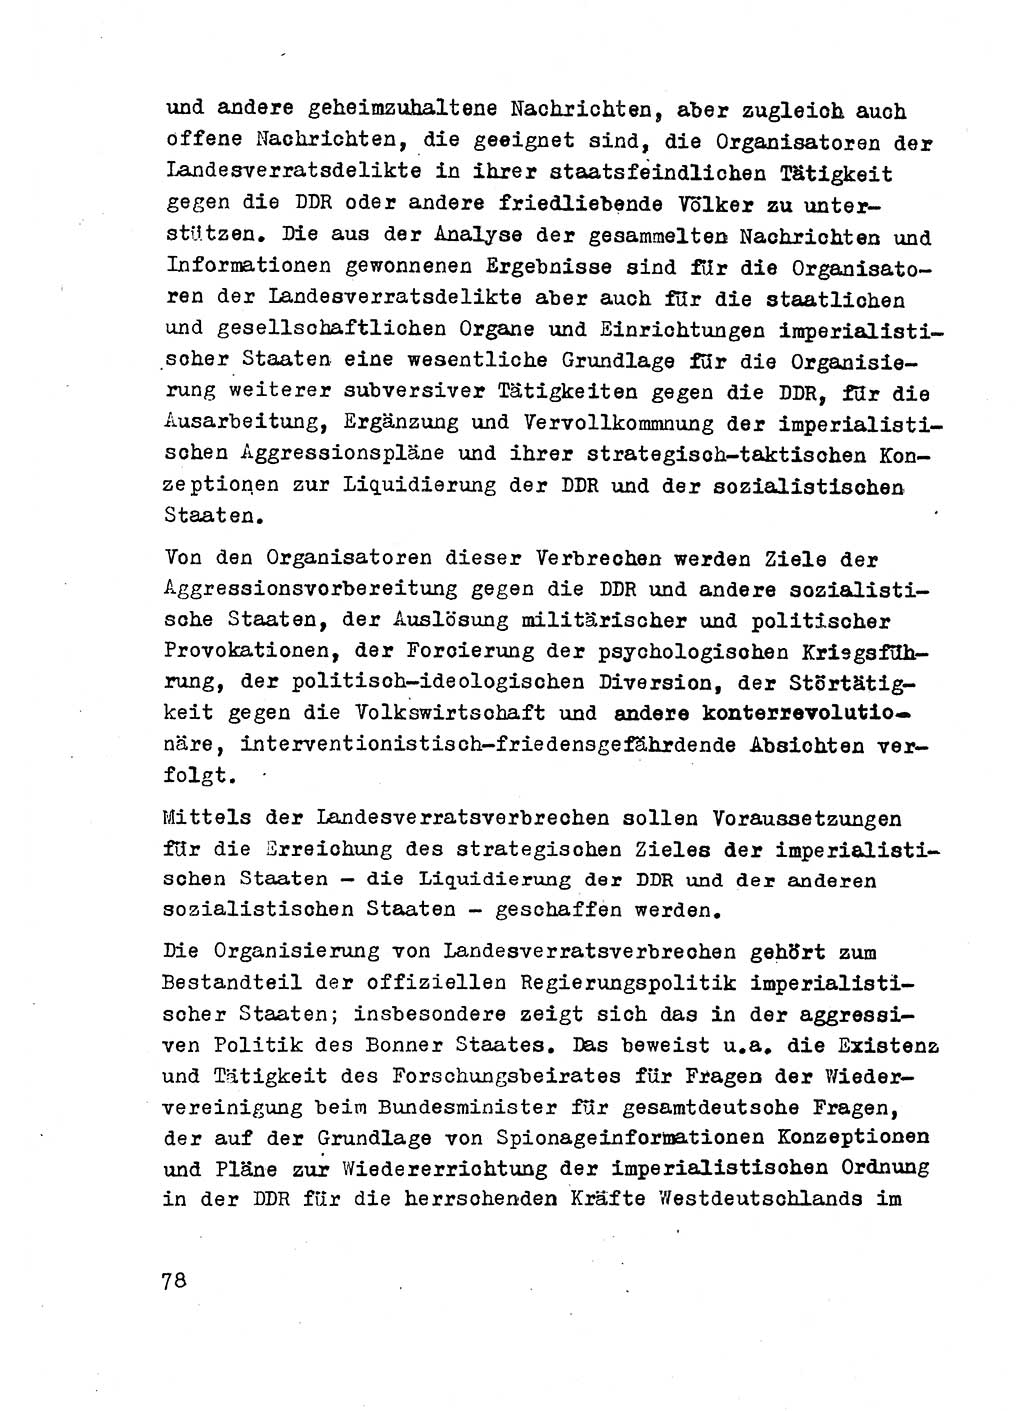 Strafrecht der DDR (Deutsche Demokratische Republik), Besonderer Teil, Lehrmaterial, Heft 2 1969, Seite 78 (Strafr. DDR BT Lehrmat. H. 2 1969, S. 78)